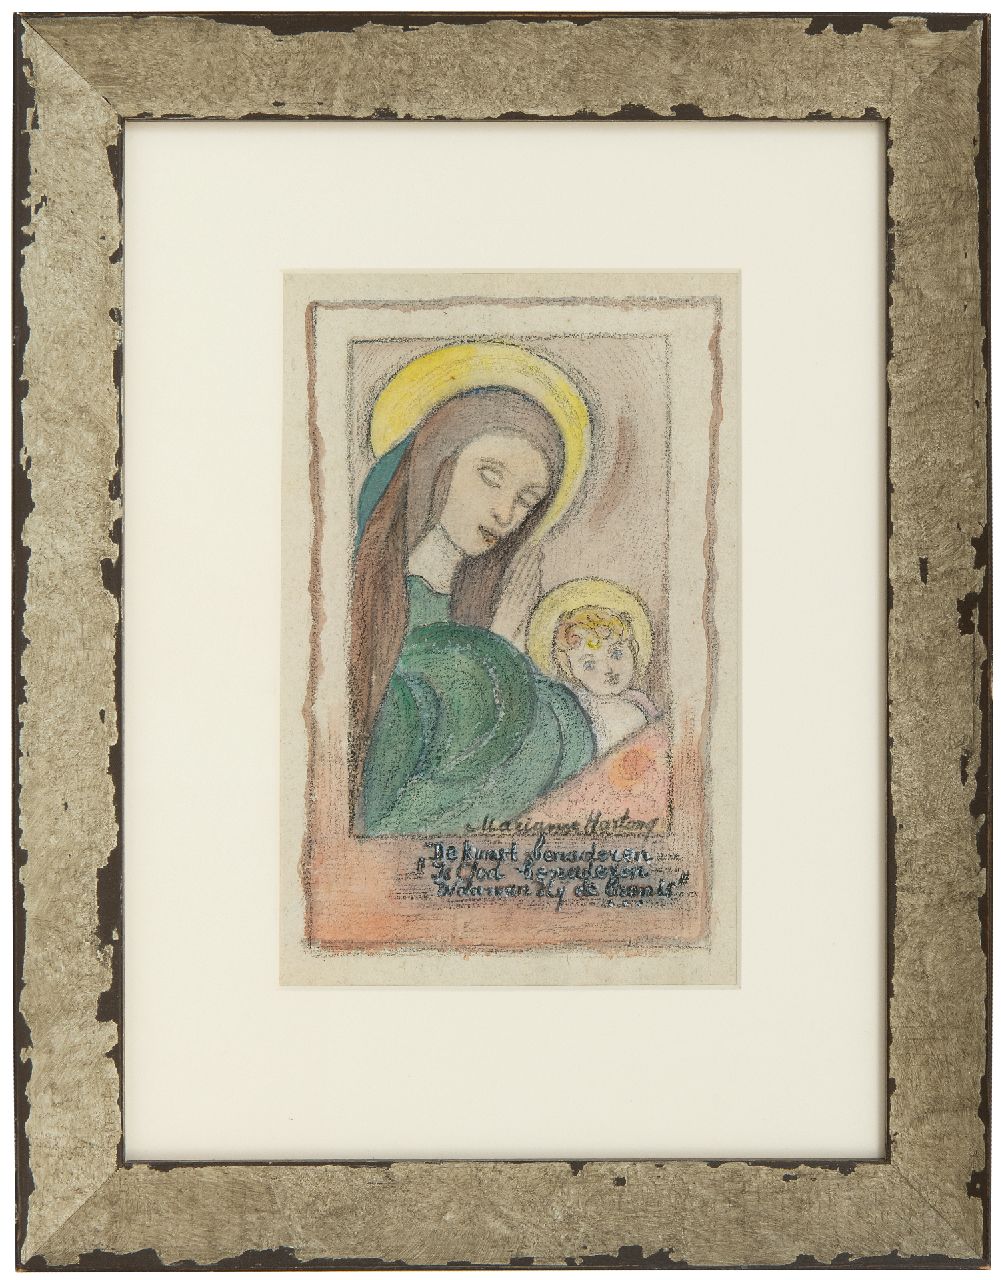 Hartong M.A.E.  | Maria Anna Elisabeth ‘Marianne’ Hartong | Aquarellen en tekeningen te koop aangeboden | Madonna met kind, krijt en aquarel op papier 21,9 x 15,2 cm, gesigneerd rechtsonder